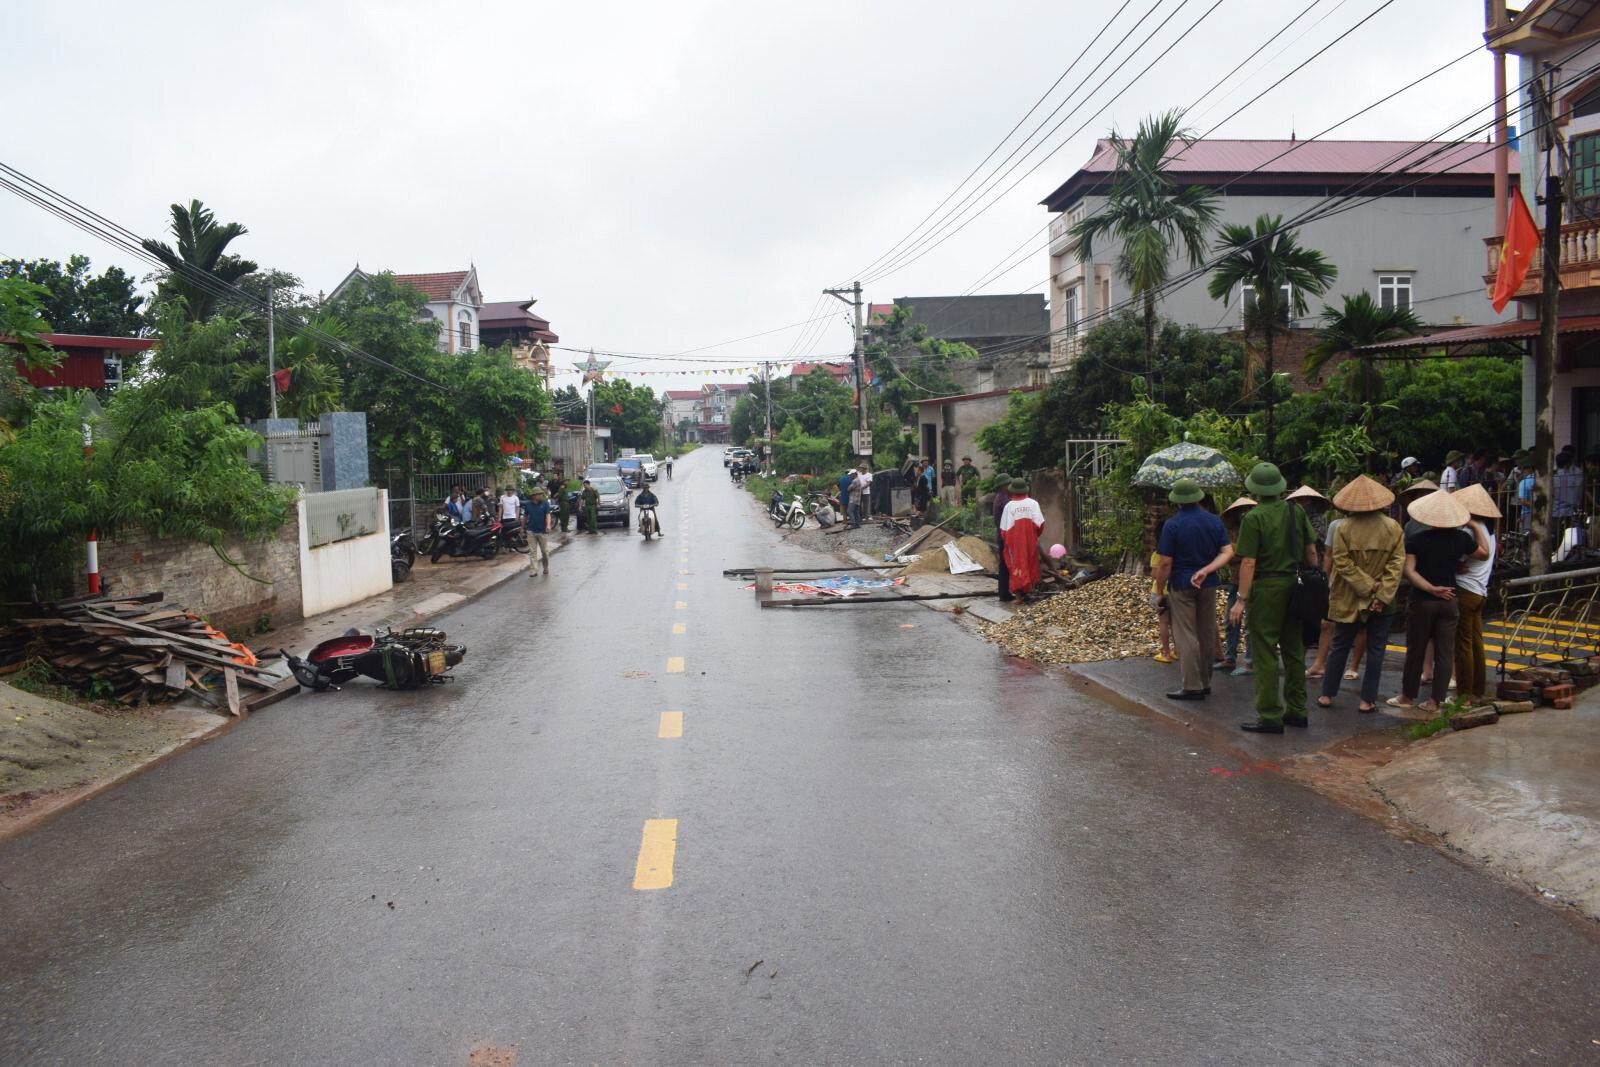 Bắc Giang: Mâu thuẫn trong đám giỗ, người đàn ông bị đâm tử vong - 1